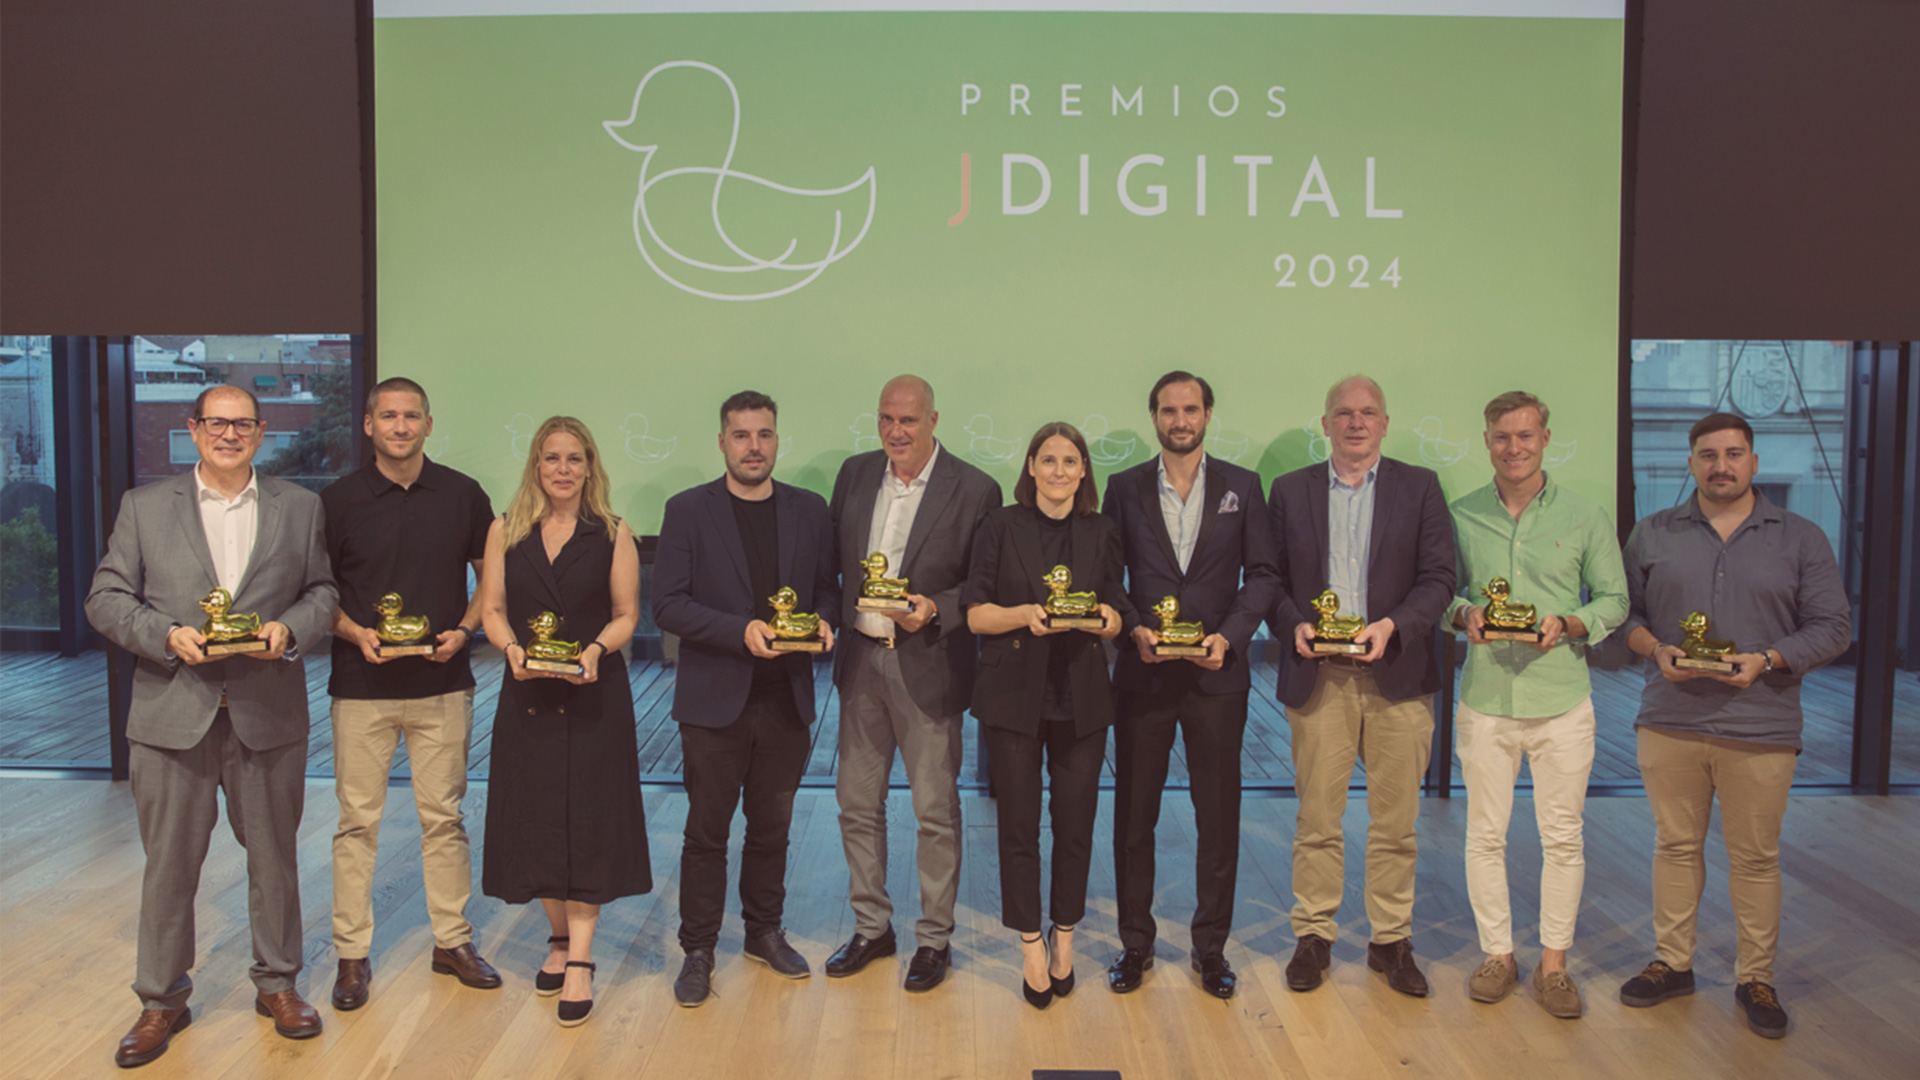 Los Premios Jdigital 2024 reúnen al sector del juego online español